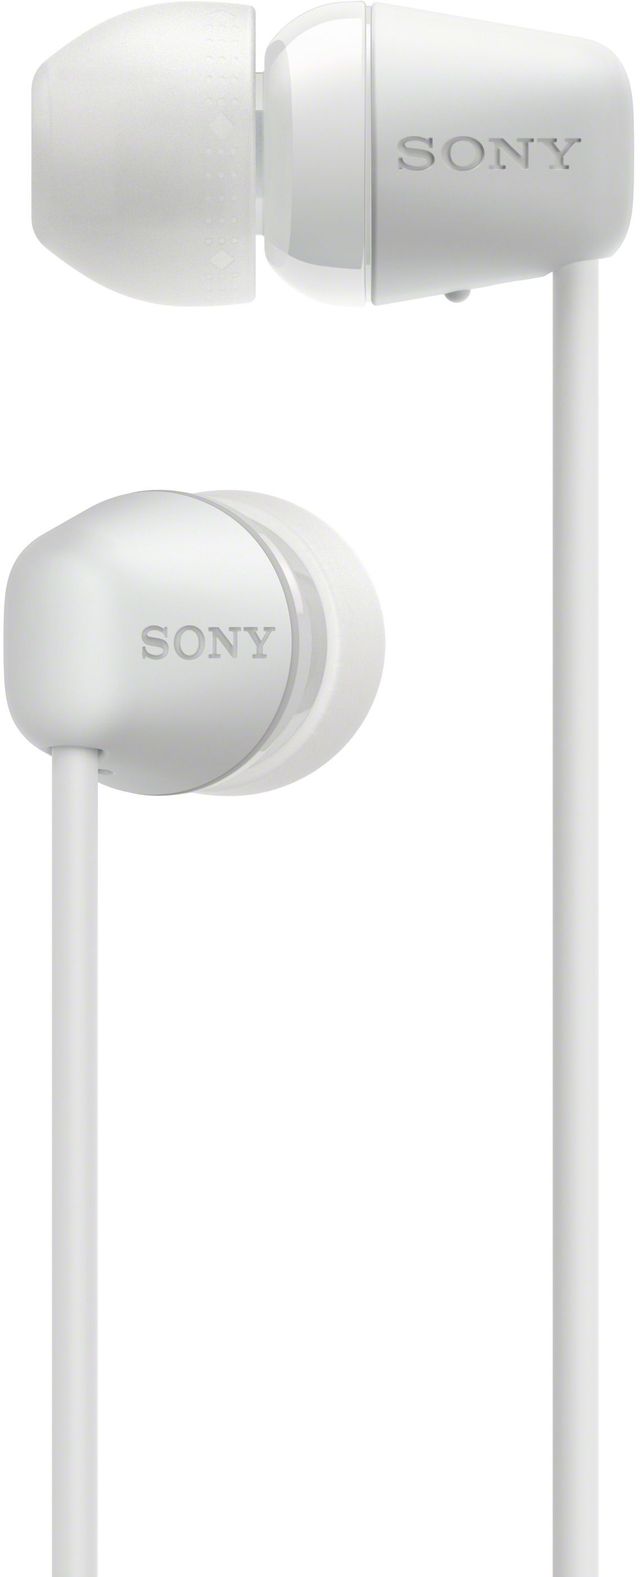 Sony WI-C200 White Wireless In-Ear Headphones 9